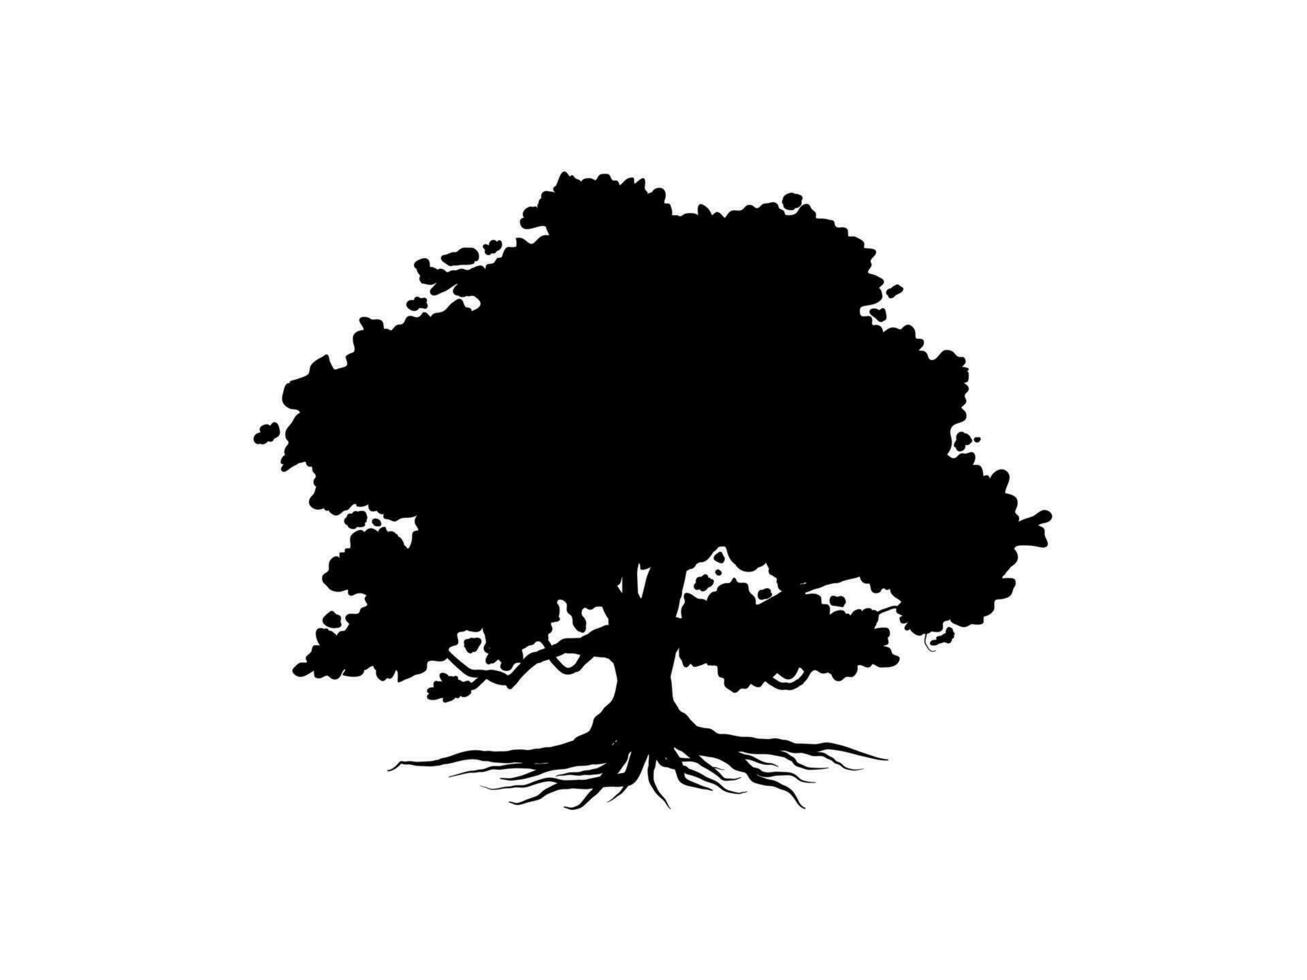 svart gren träd eller naken träd silhuetter. hand dragen isolerat illustrationer. vektor